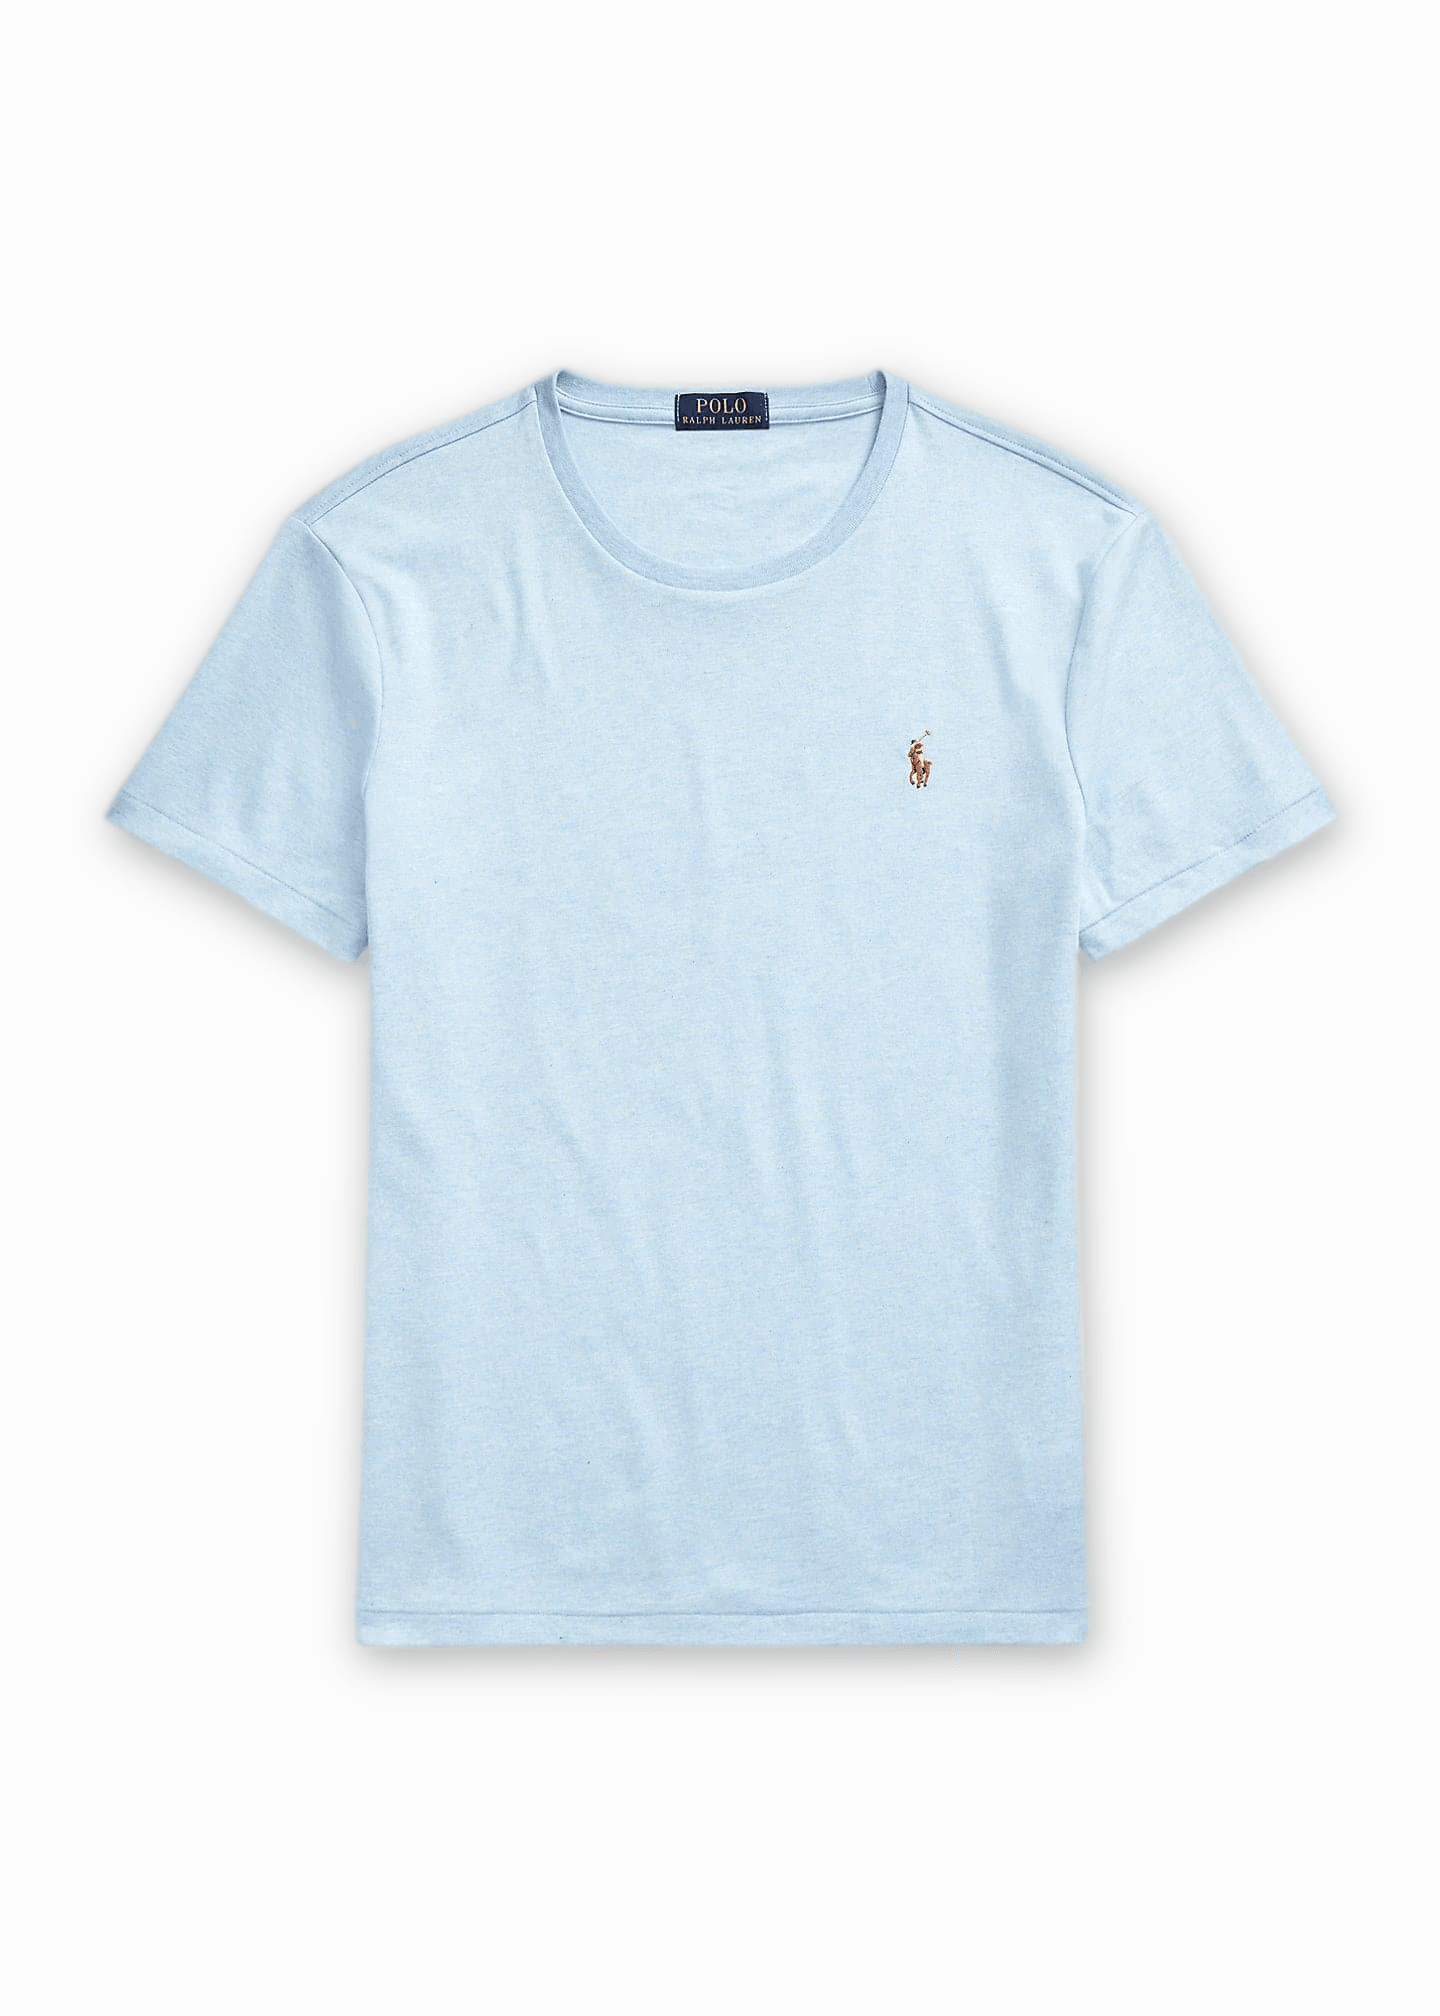 Laflamme- T-shirt classique bleu pâle - Ralph lauren